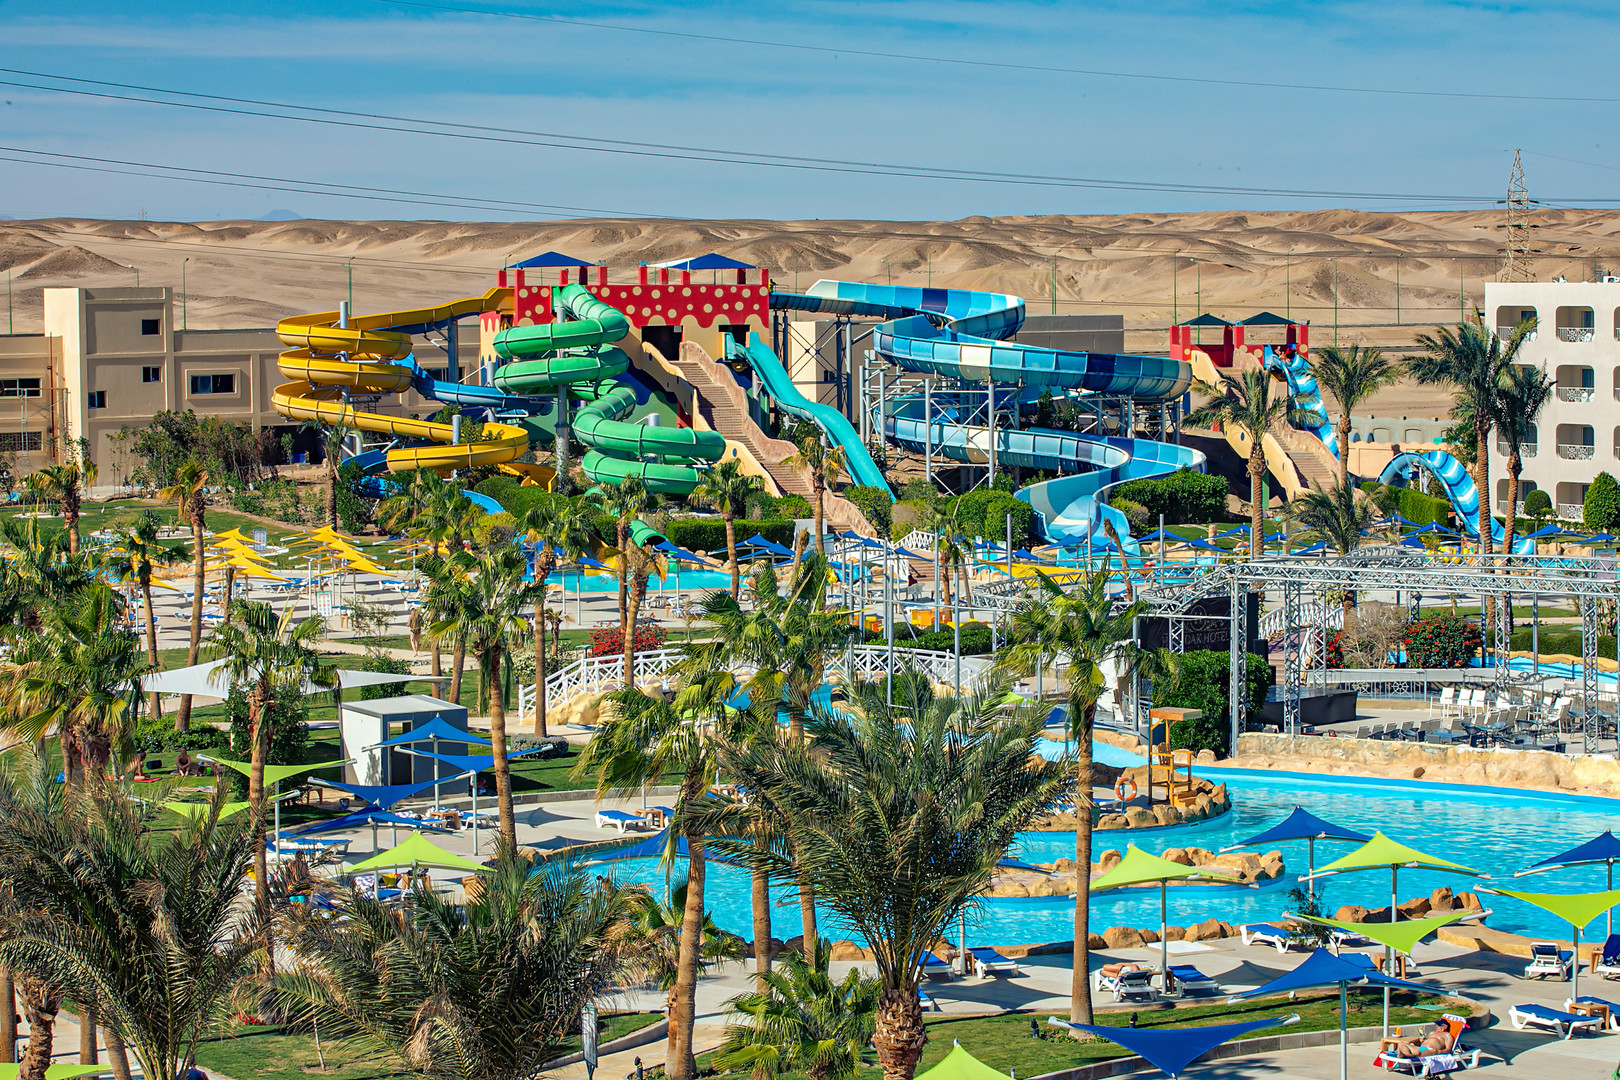 Titanic Resort and Aqua Park, Hurghada